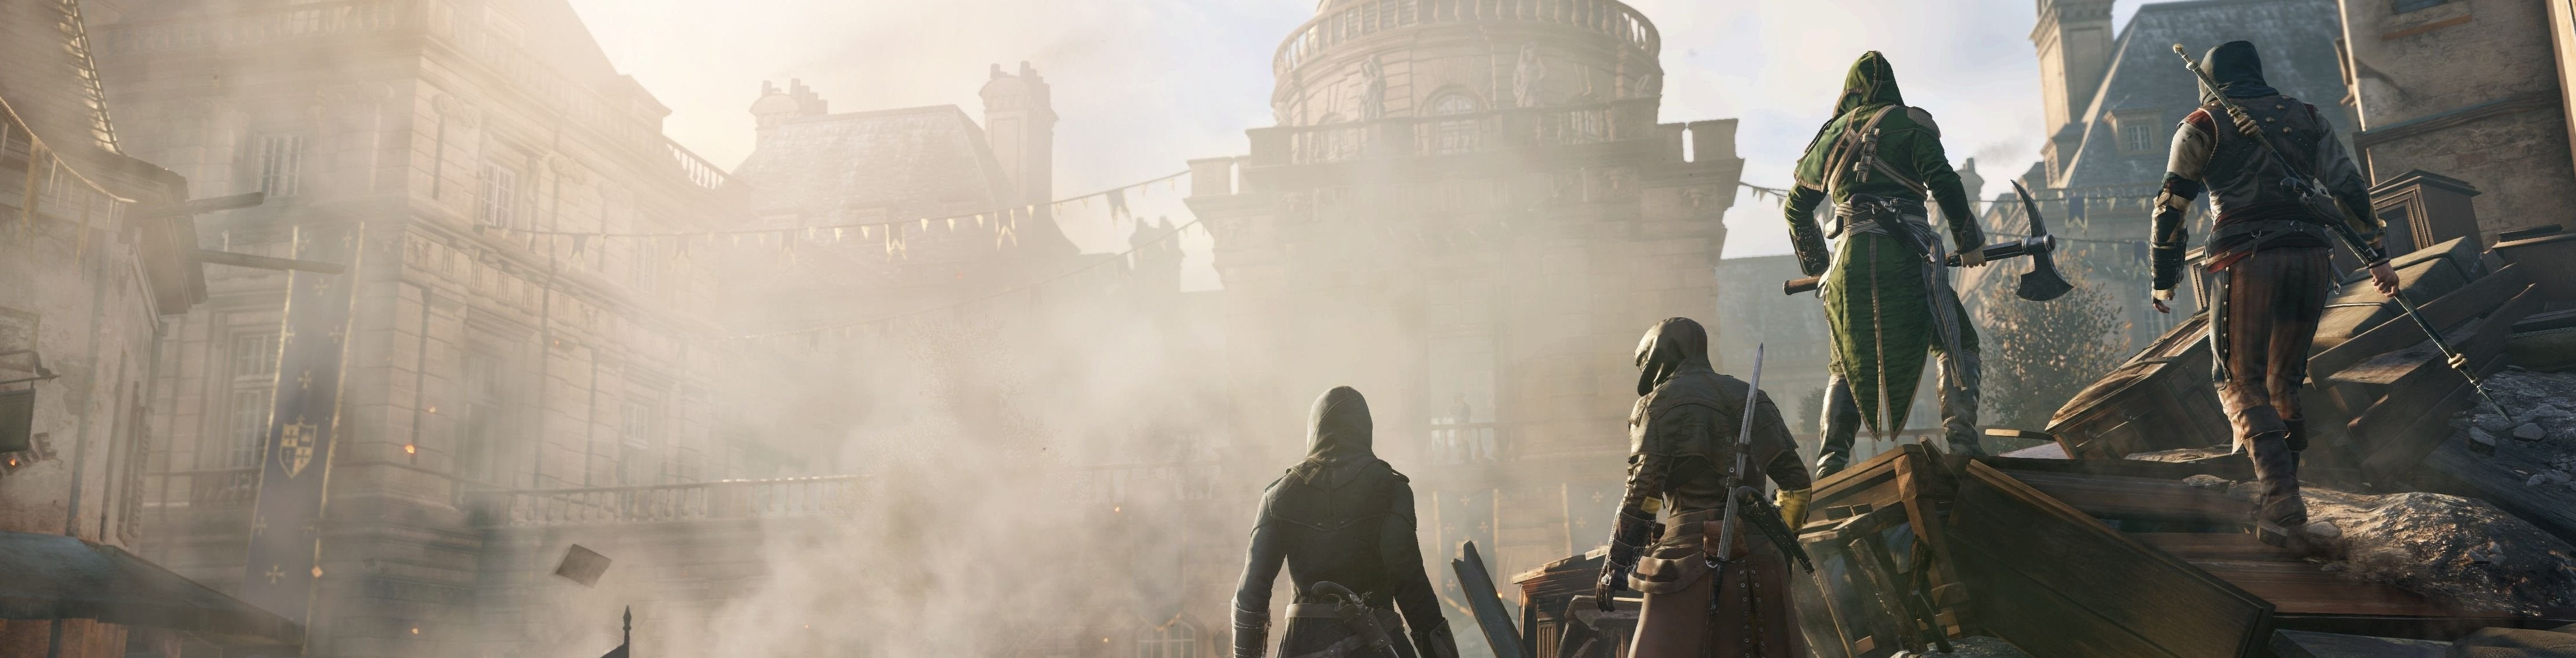 Afbeeldingen van Dead Kings DLC voor Assassin's Creed Unity wordt gratis